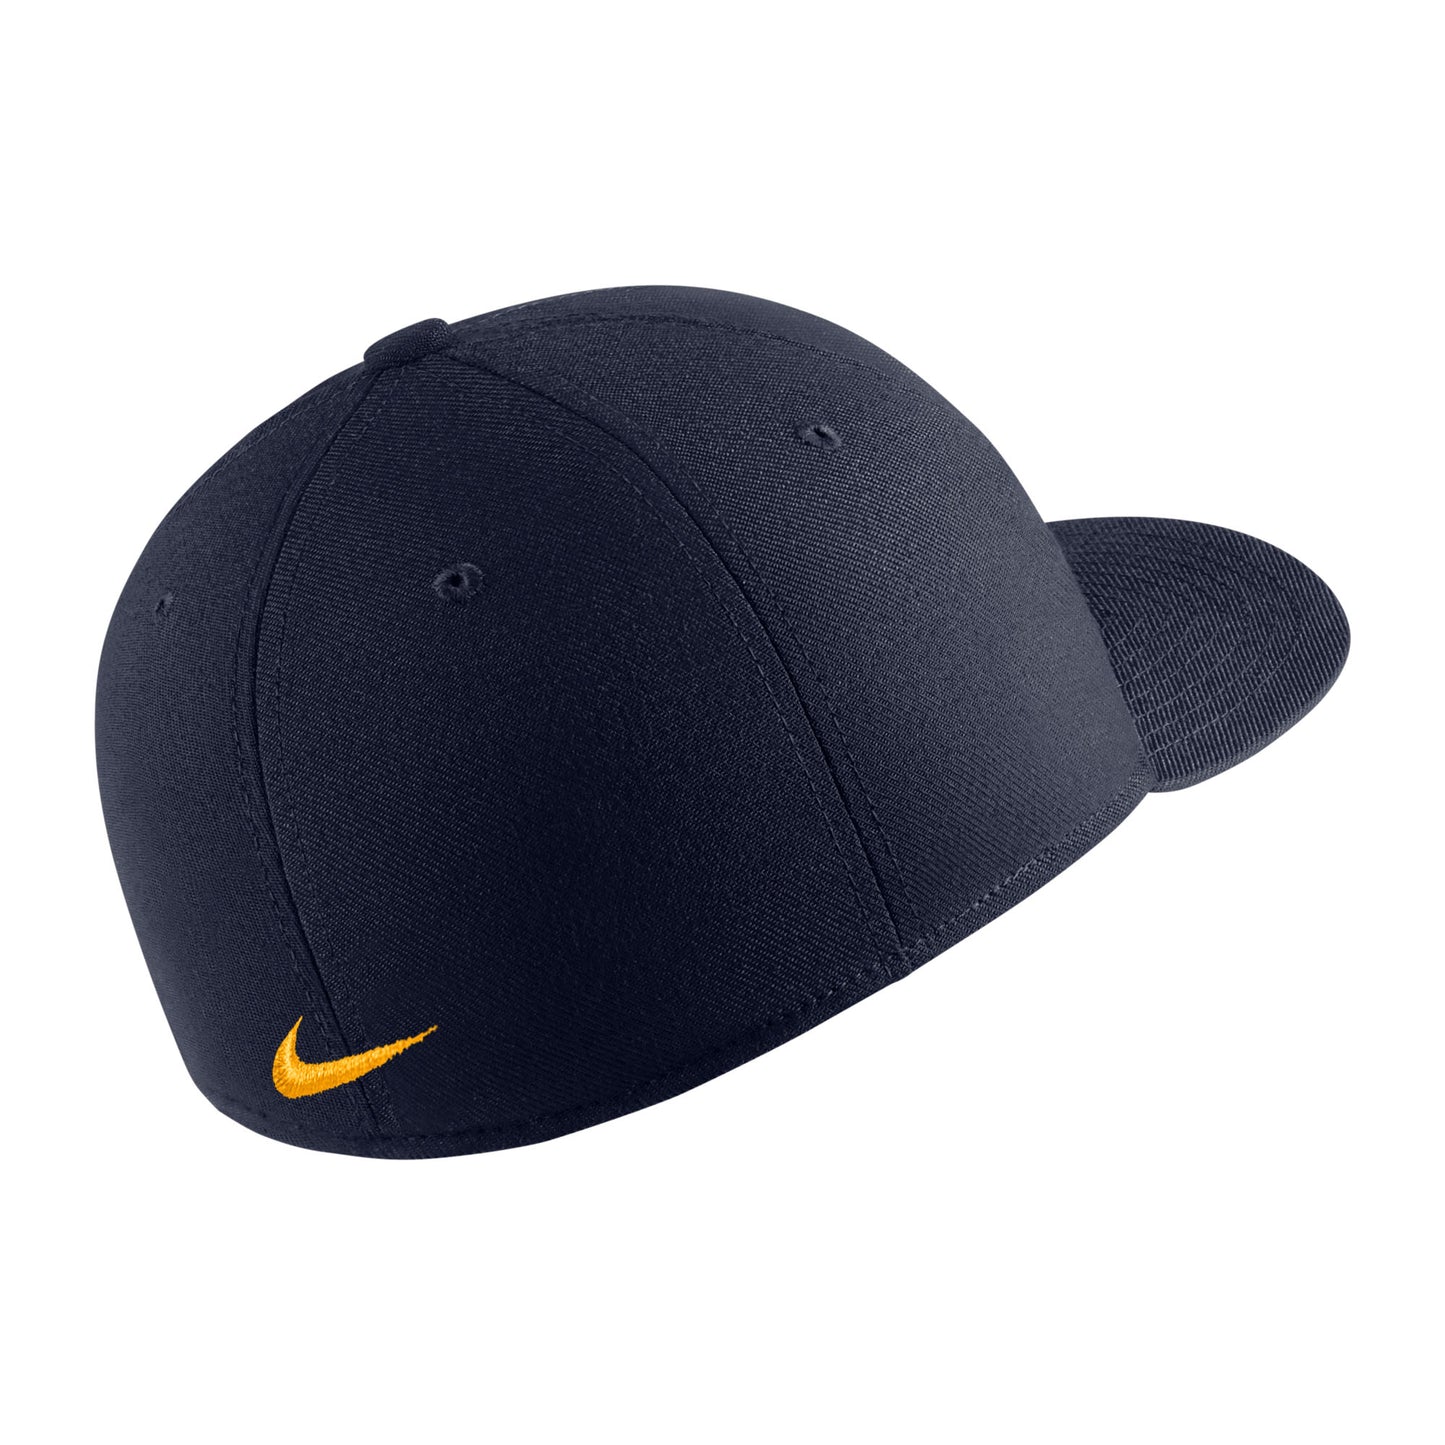 U.C. Berkeley Cal embroidered Swoosh flex hat-Navy-back side.